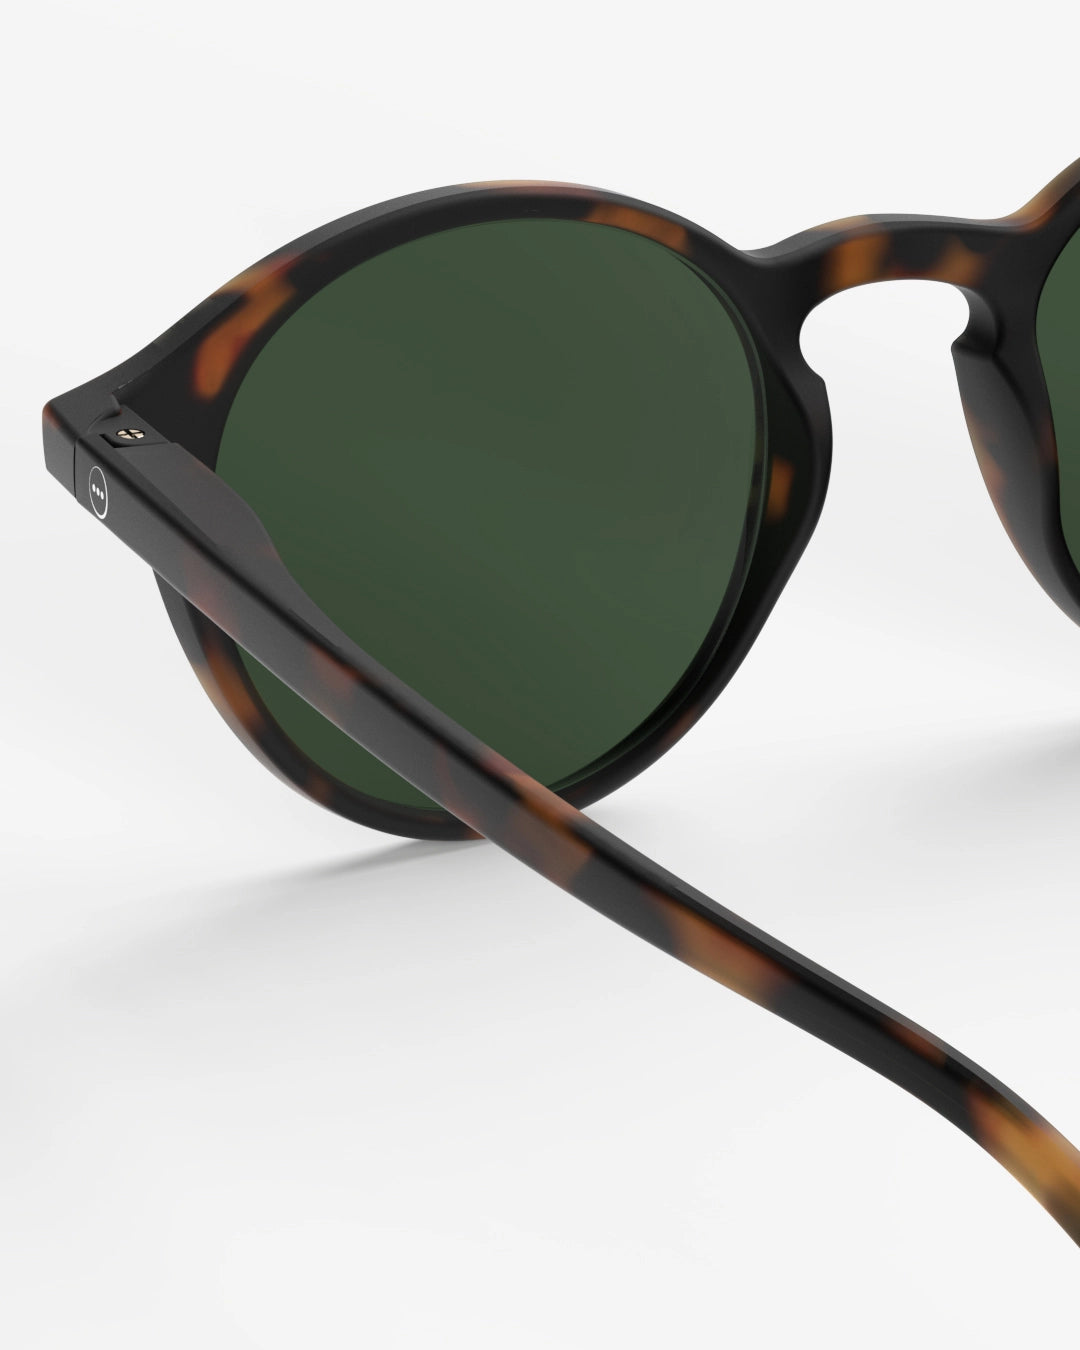 #D Sun Glasses - Tortoise green Lenses